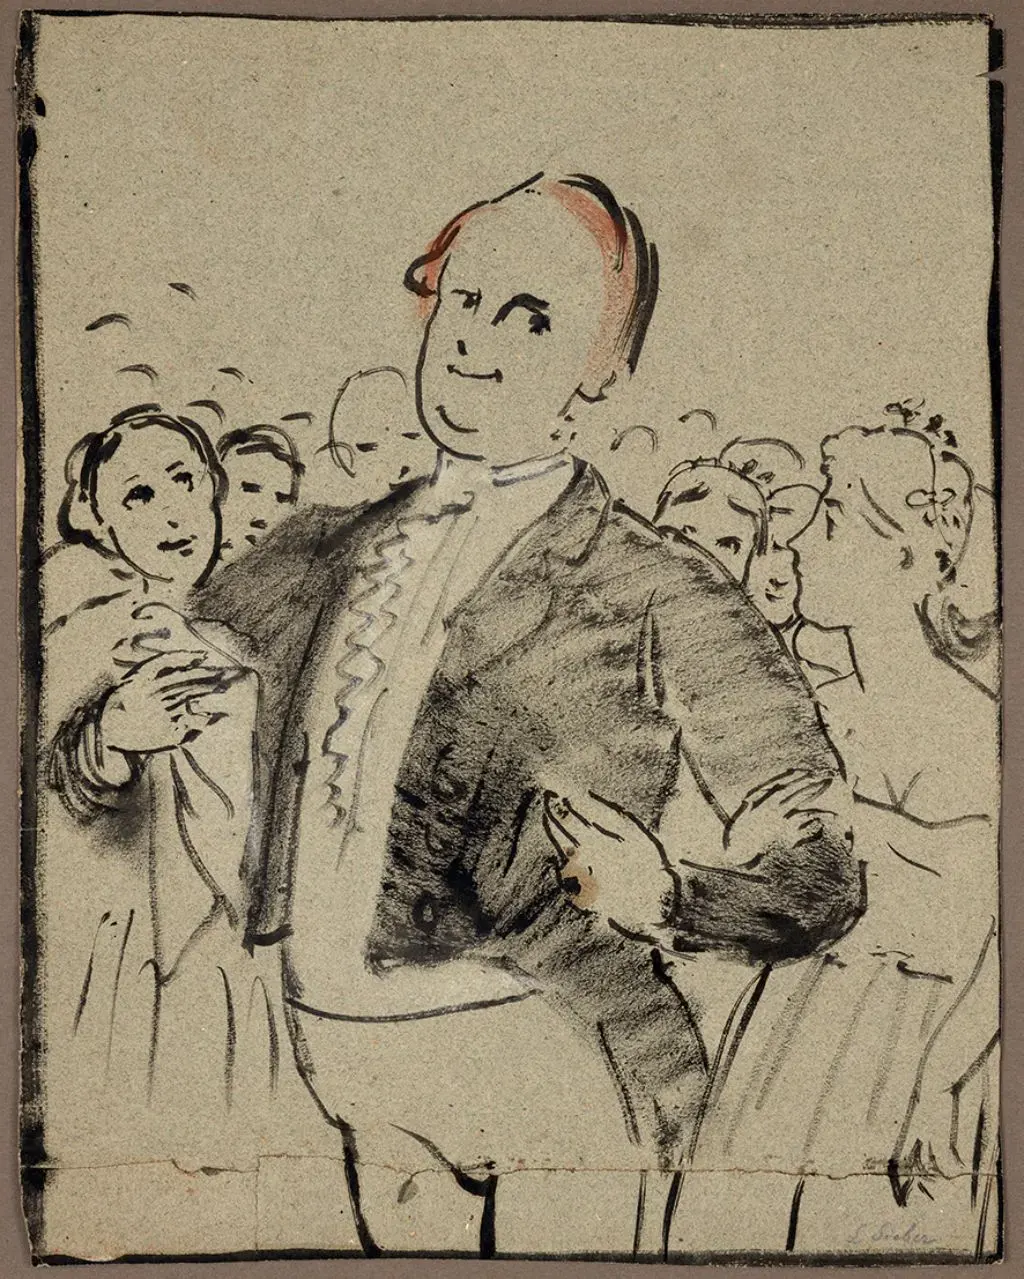 Zeichnung: "Dr. Ludwig Sieber (gern gesehen im Kreise junger Damen)". Der Maler Arnold Böcklin (1827-1901) zeichnete das Miniaturbild als Teil des "Schnitzelbank-Zyklus" um 1869